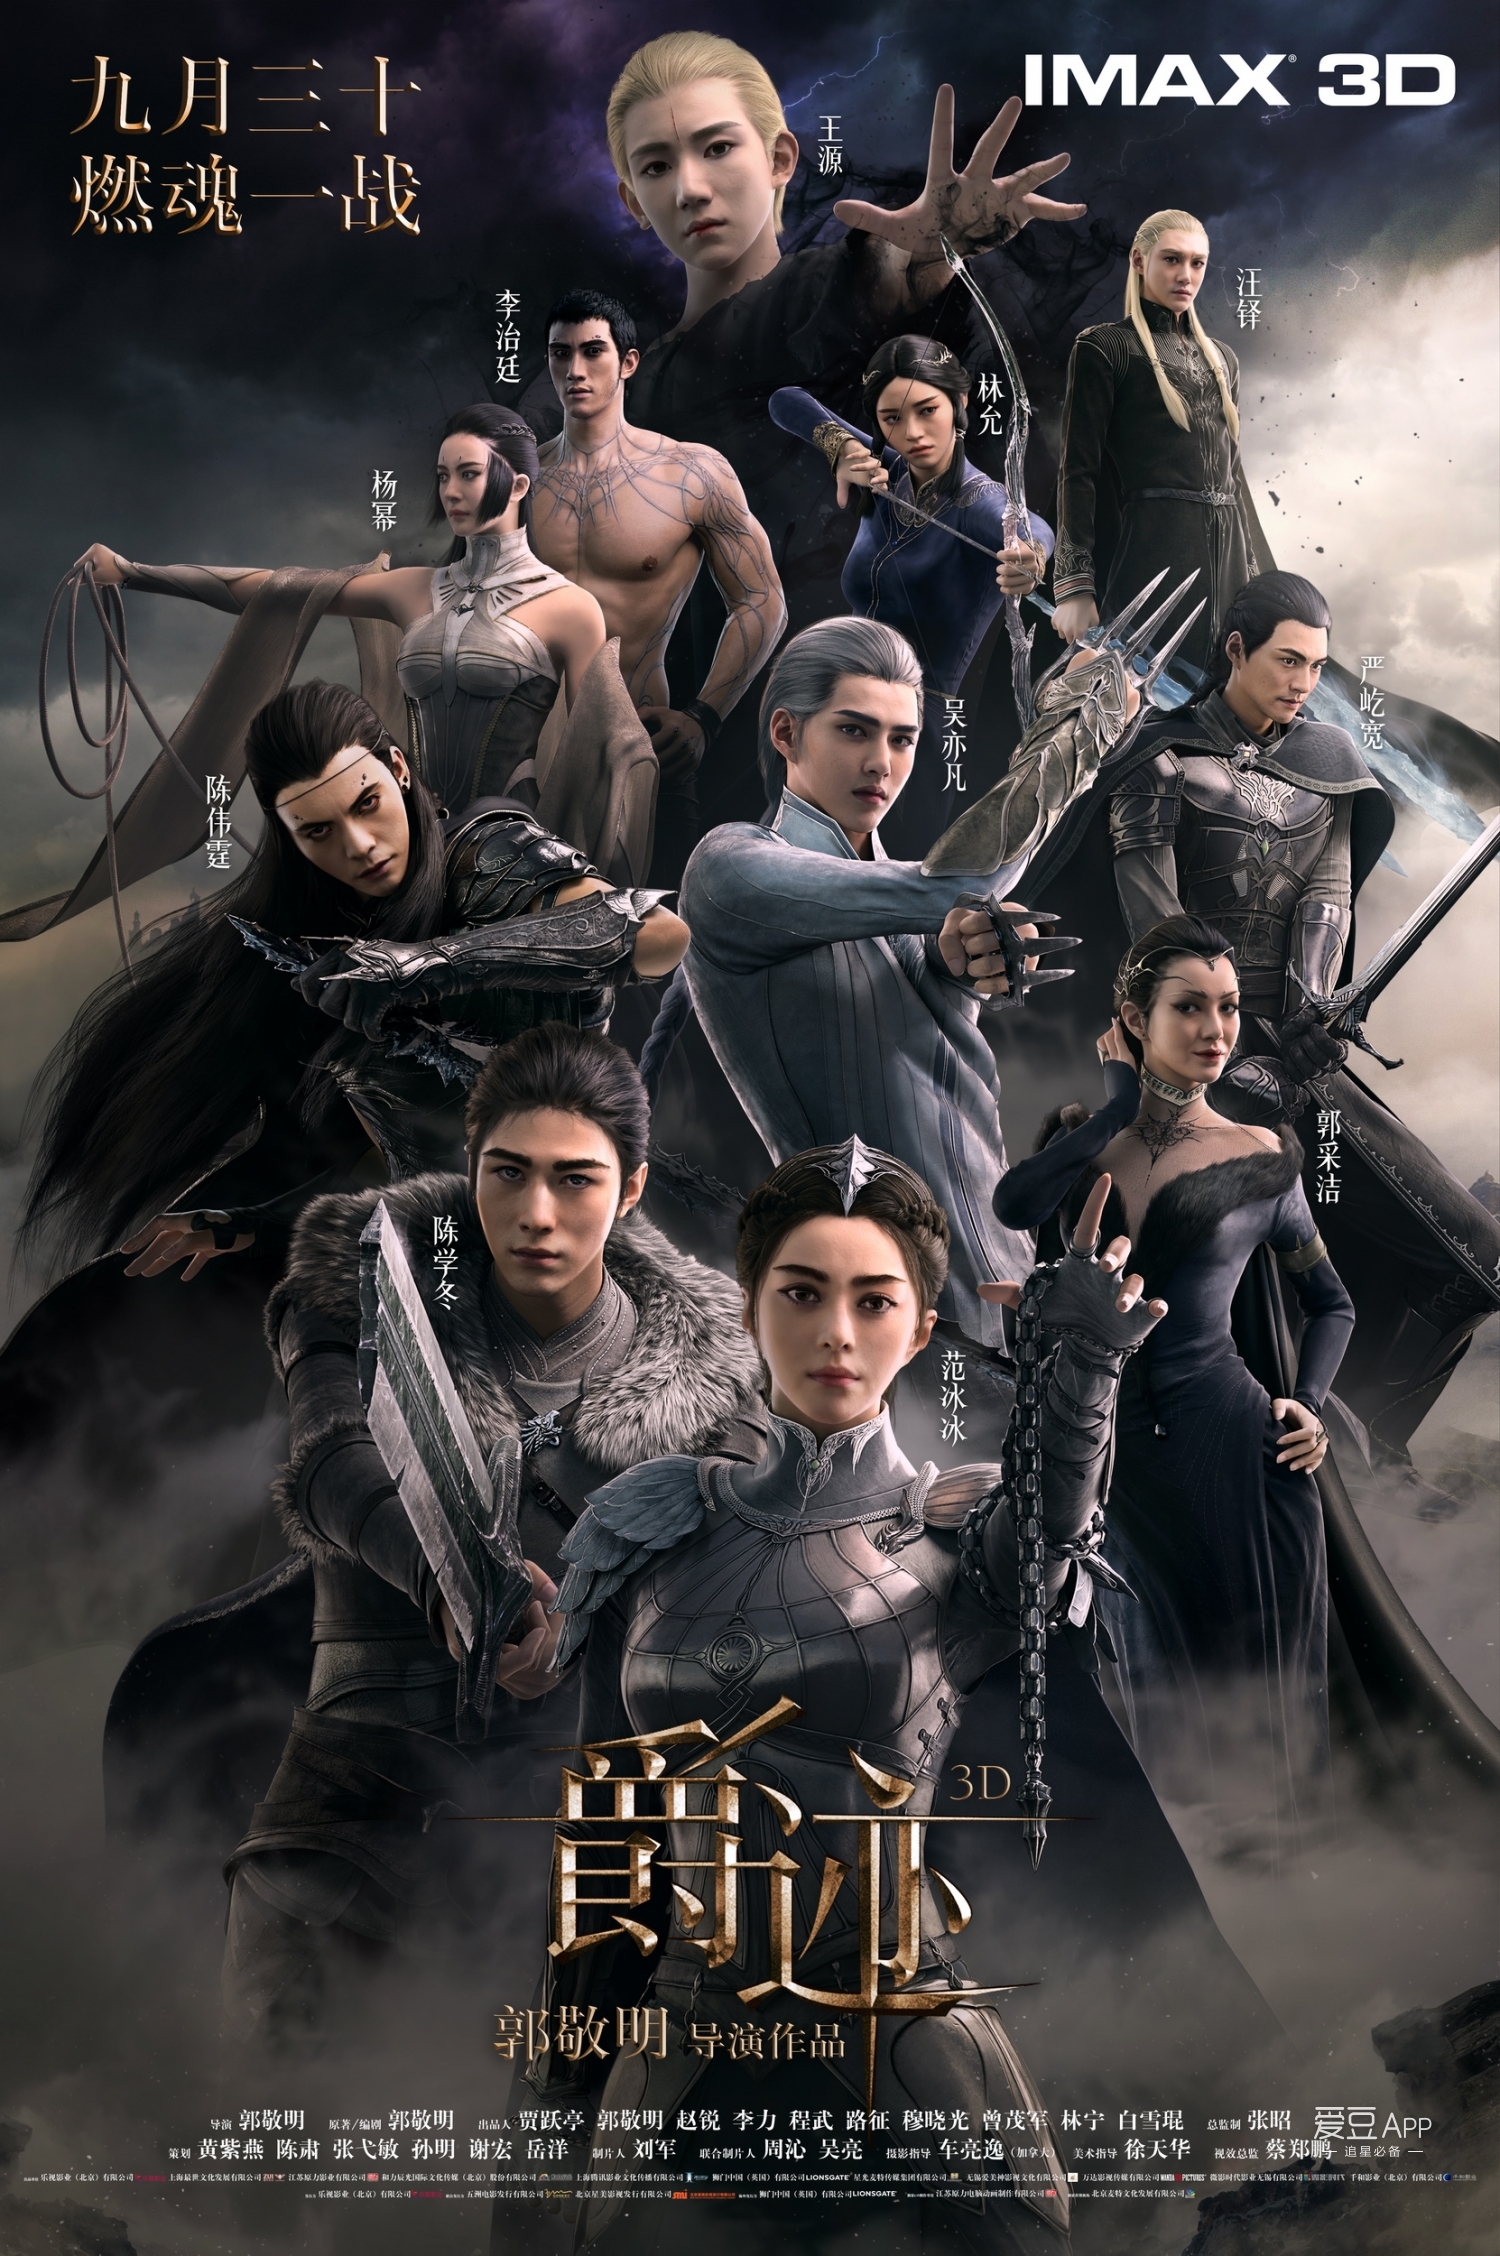 《爵迹》同步登陆imax 3d银幕  挑战华语电影新类型